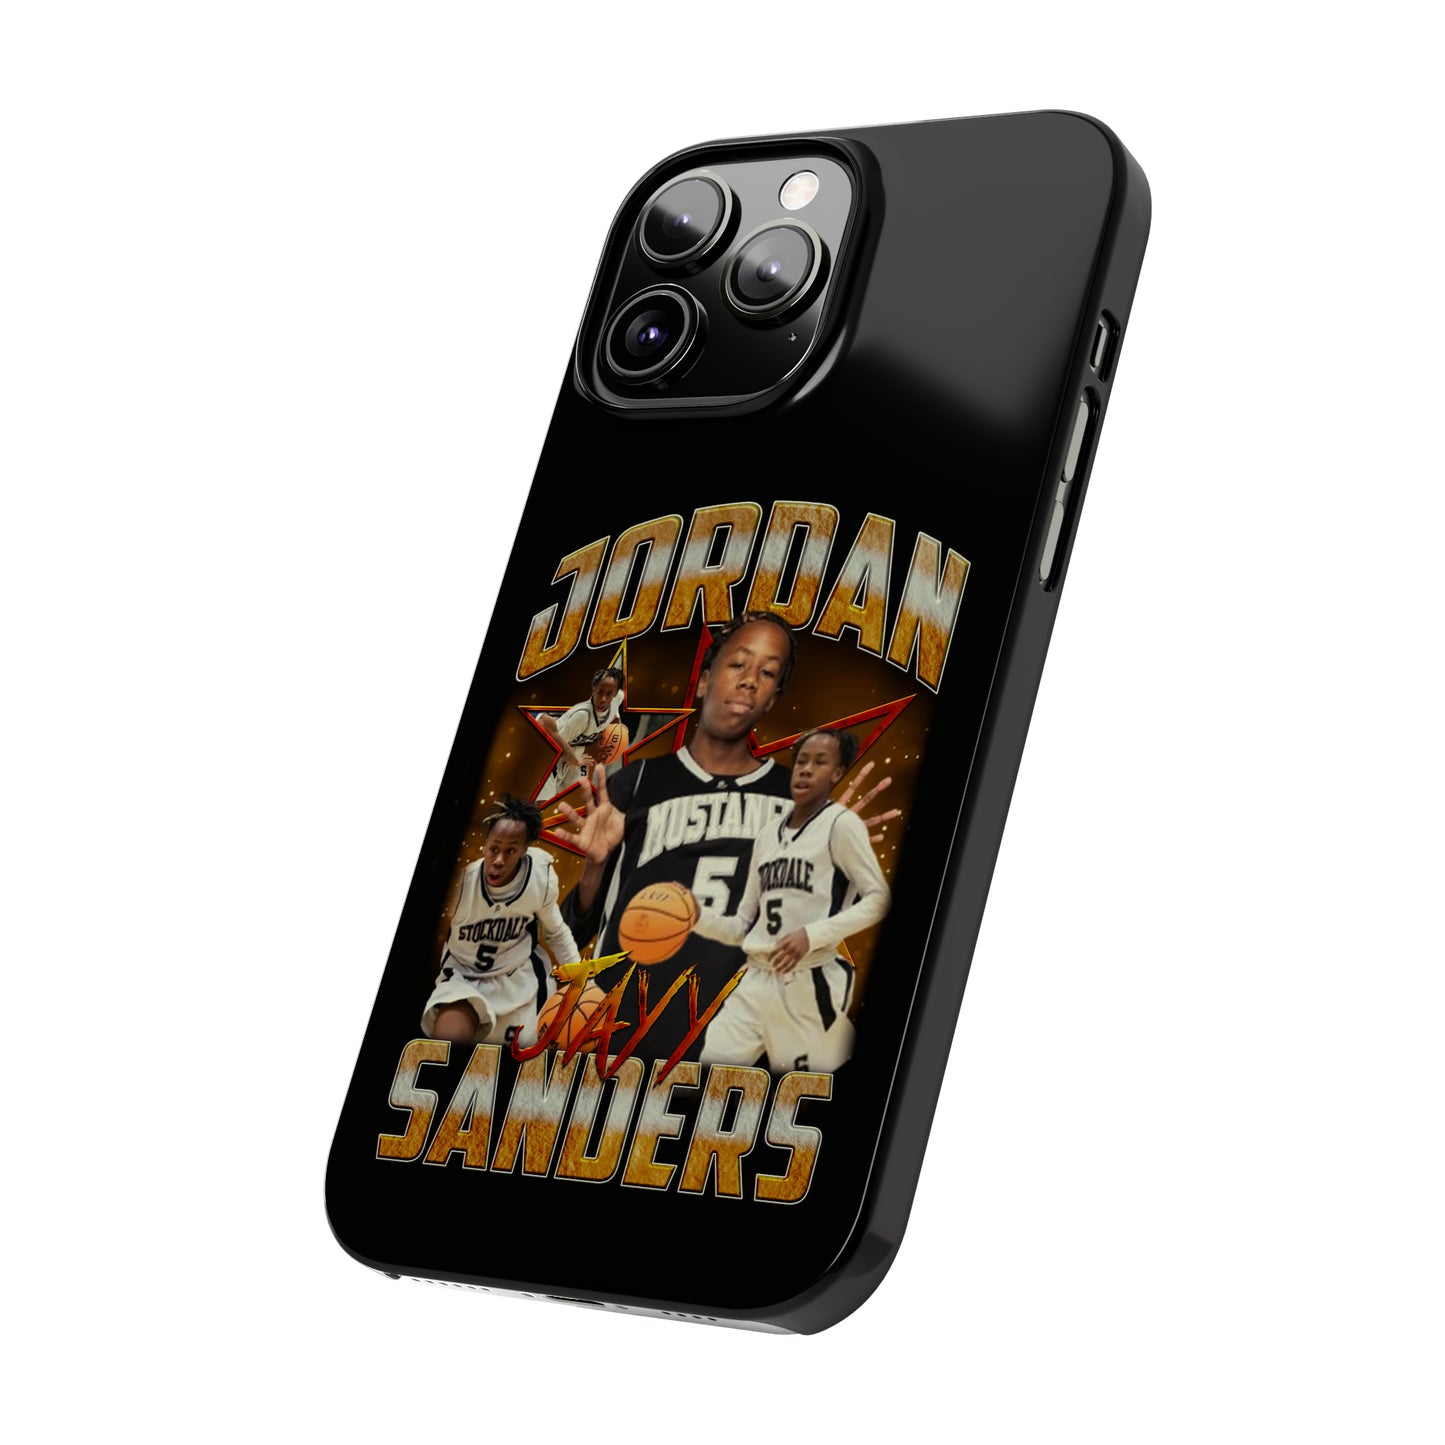 Jordan Sanders Phone Case